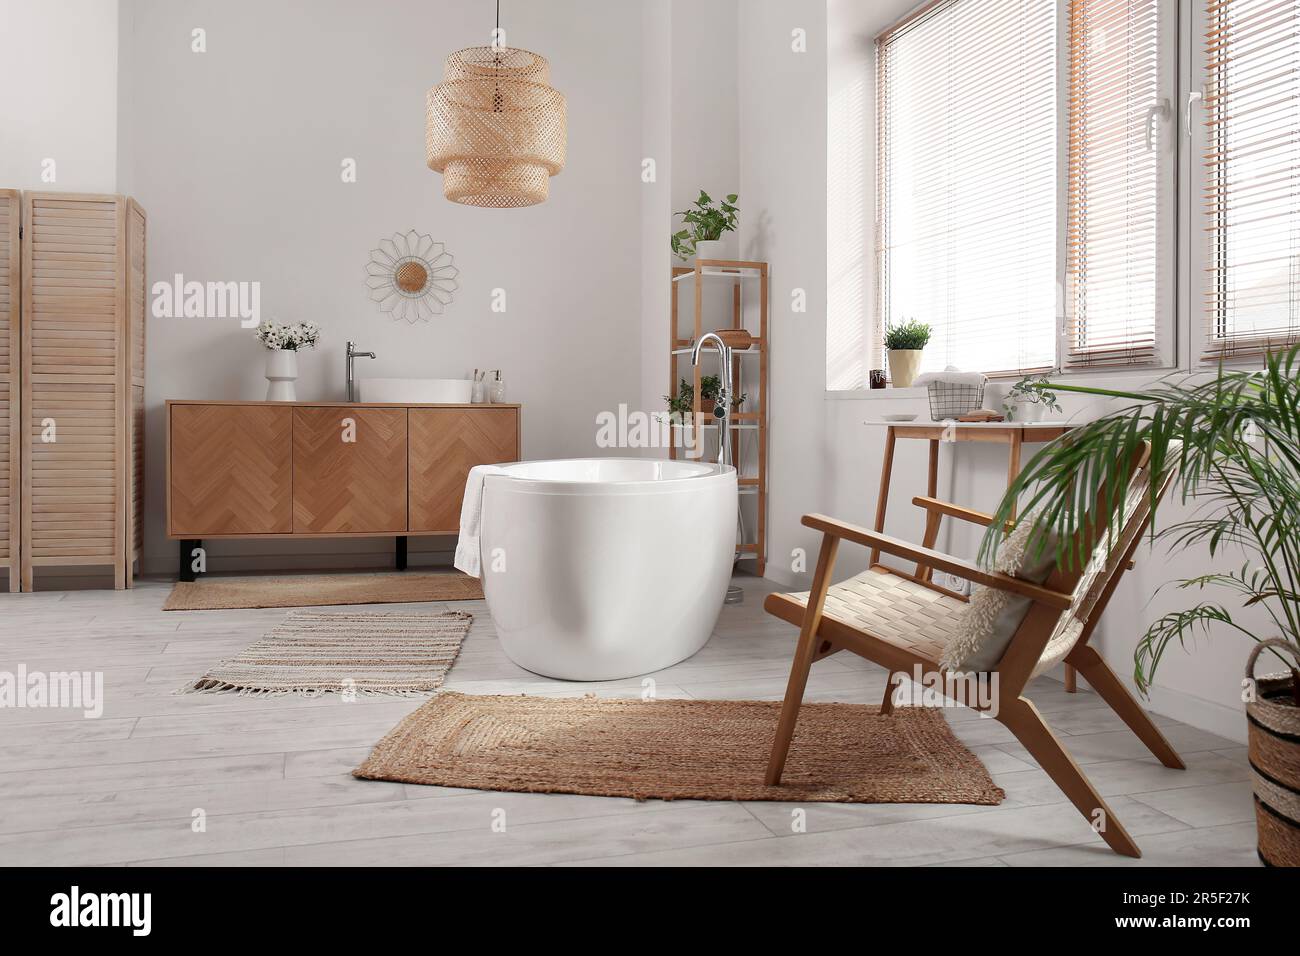 Intérieur de la salle de bains avec fauteuil, baignoire et armoire en bois  Photo Stock - Alamy